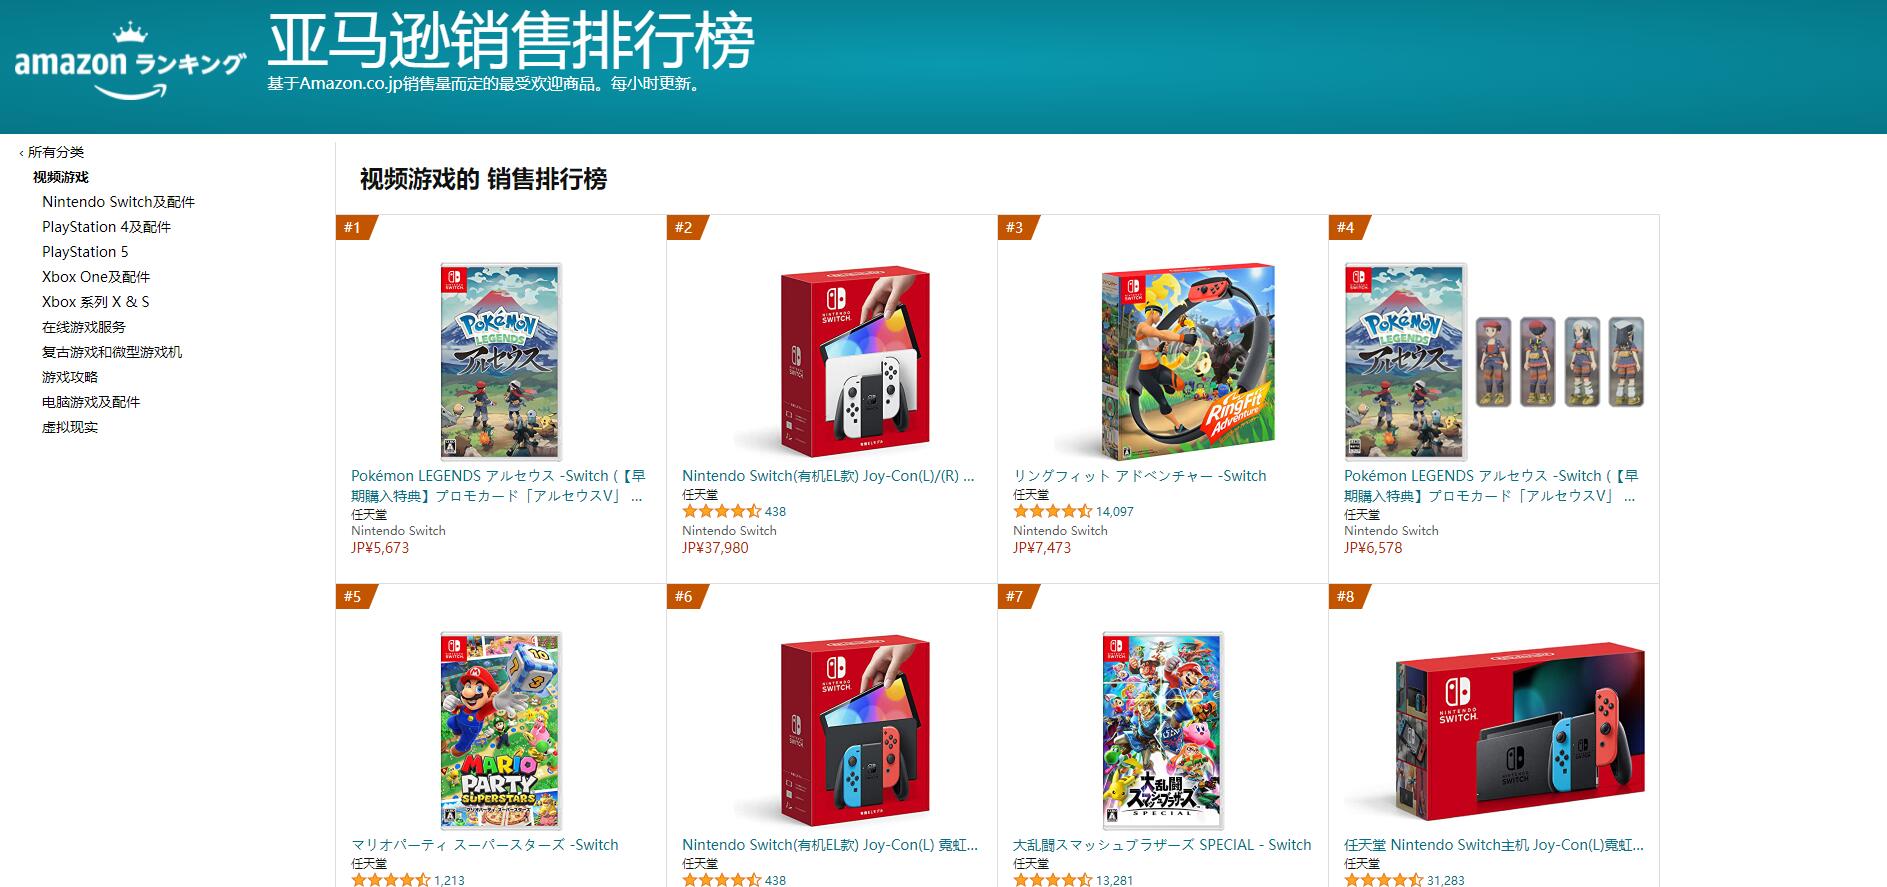 《宝可梦传说》尚未发售已成为亚马逊各地区最畅销游戏-第2张